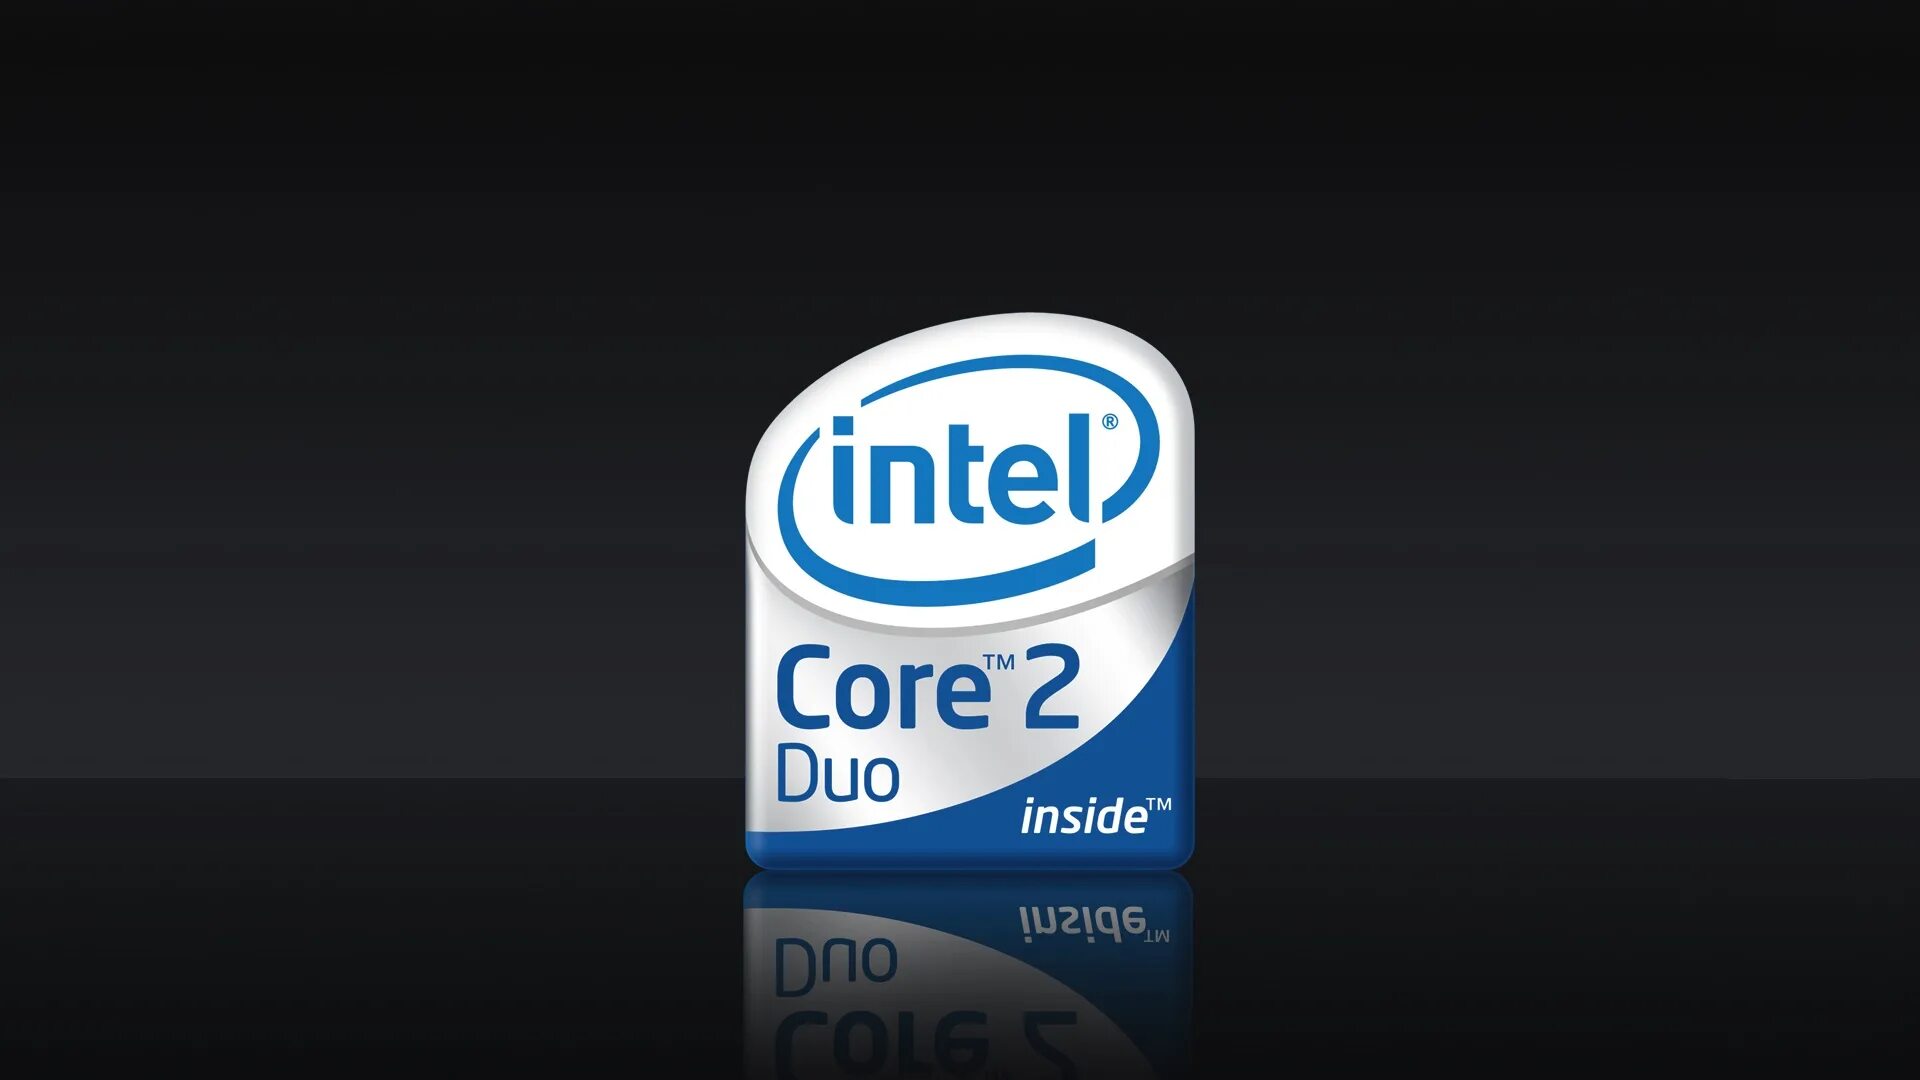 Интел Core 2 Duo. Intel Core 2 Duo logo. Intel Core 2 Duo inside. Интел пентиум логотип 2 Core.